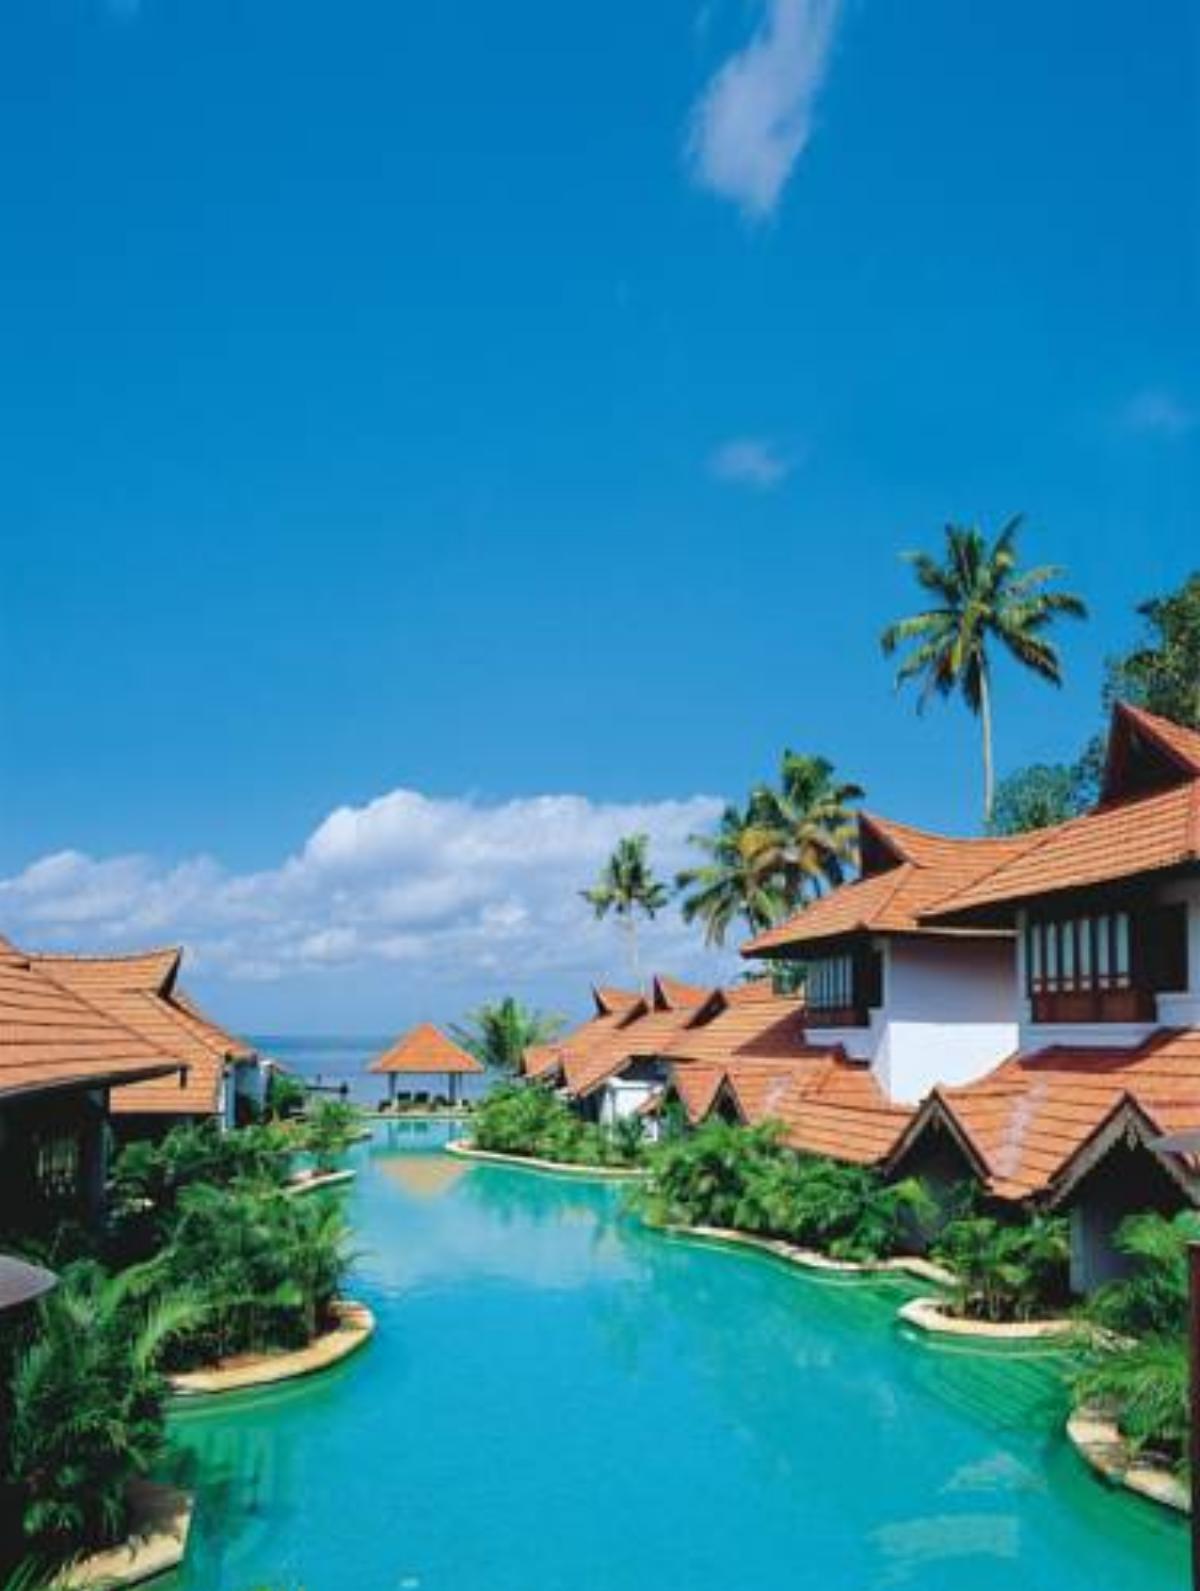 Kumarakom Lake Resort Hotel Kumarakom India